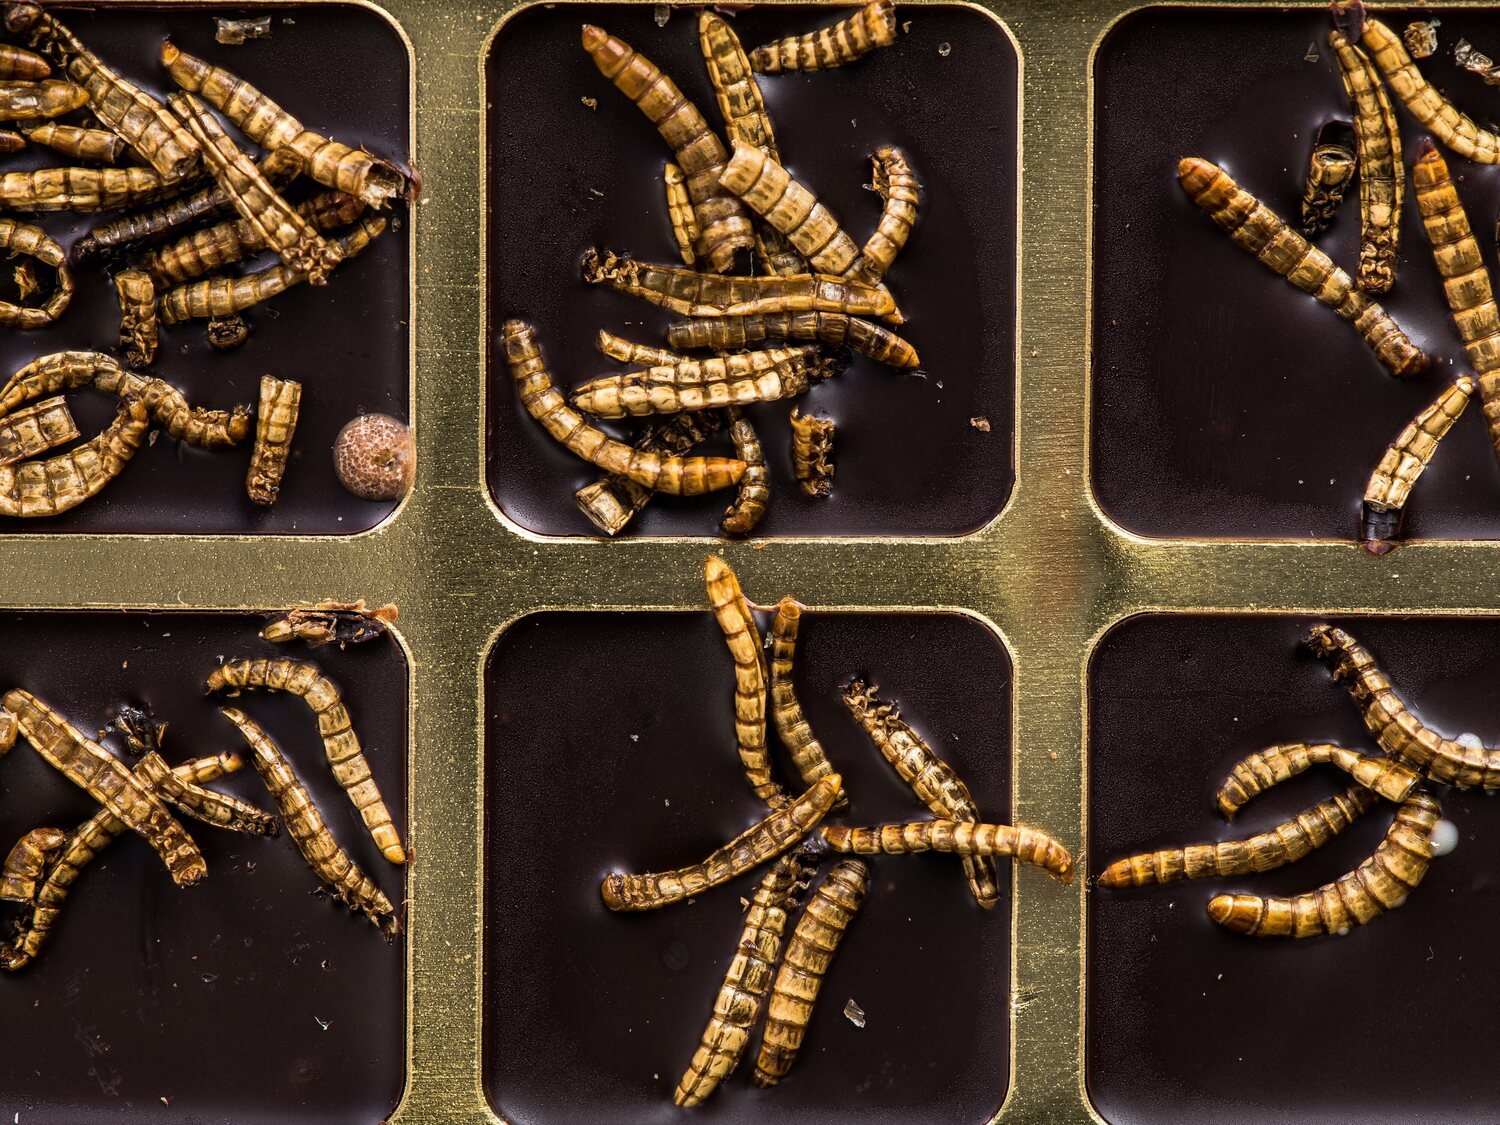 Un grupo de científicos despierta a unos gusanos que llevaban 46.000 años congelados